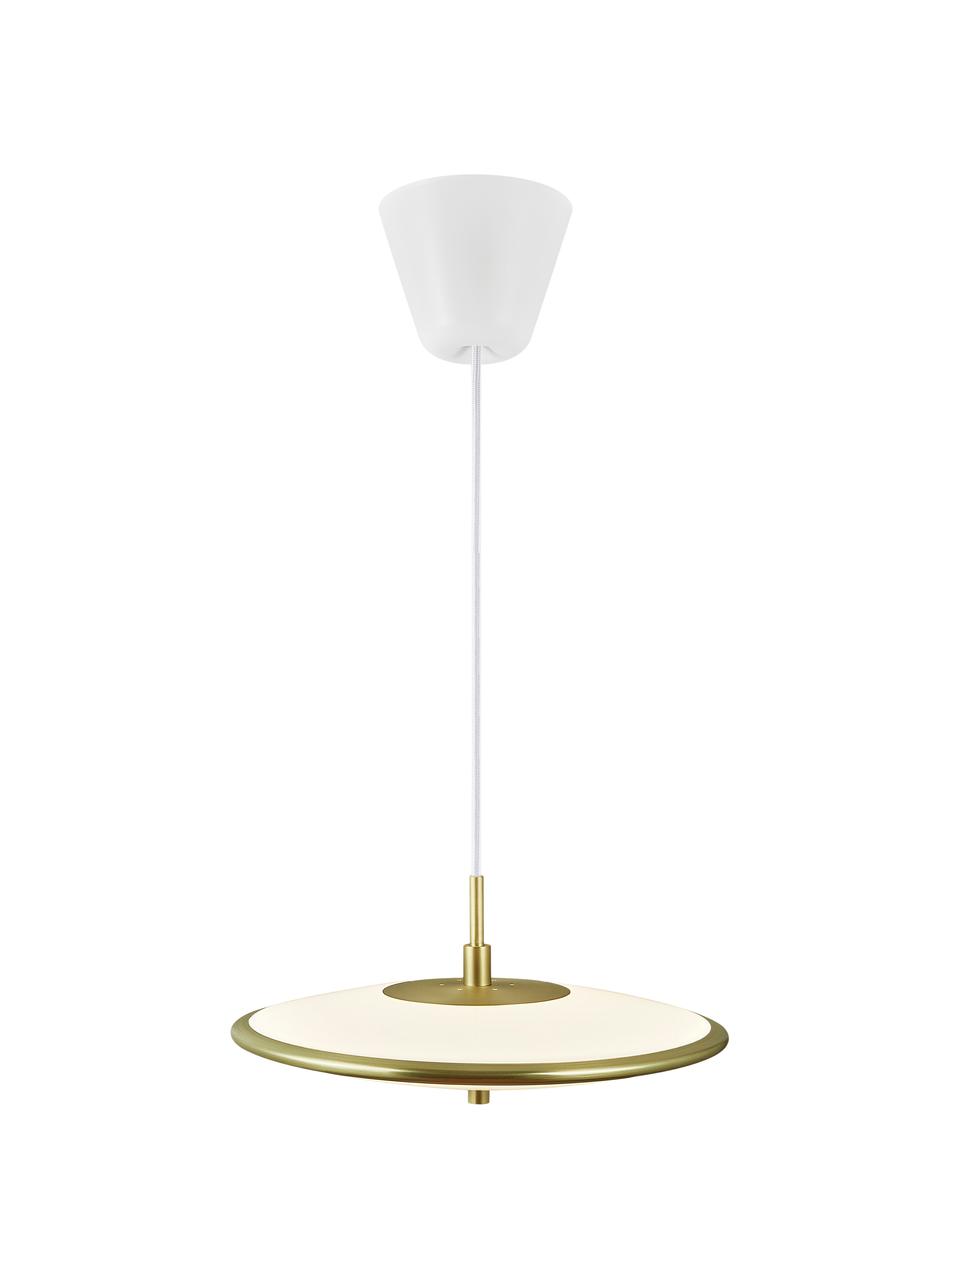 Lámpara de techo LED regulable Blanche, Pantalla: plástico, metal, Anclaje: plástico, Cable: cubierto en tela, Blanco, dorado, Ø 32 x Al 14 cm